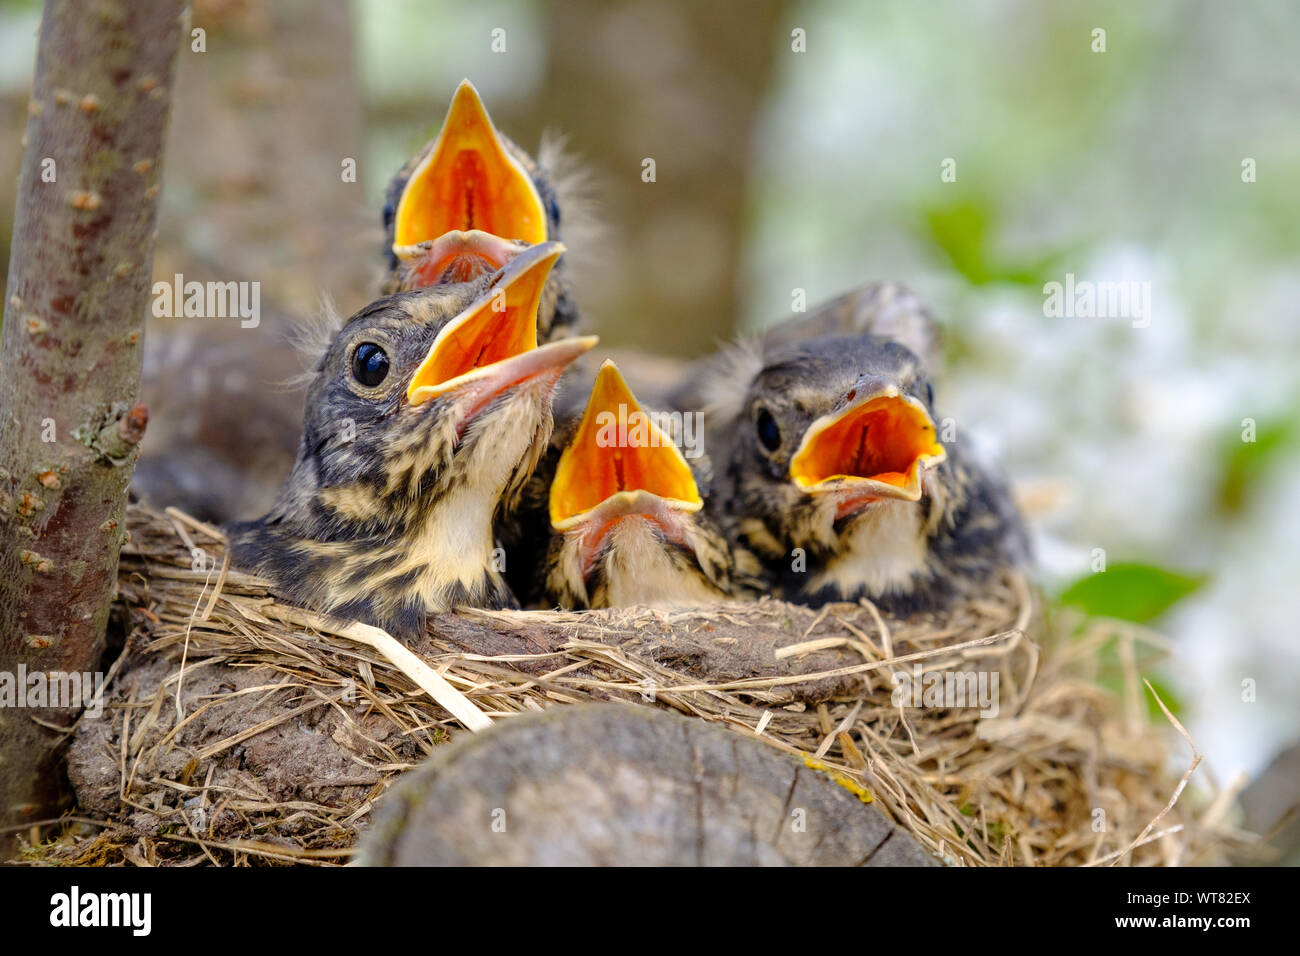 Covata di uccelli nel nido su albero in fiore, uccelli Baby, nesting con ampi open orange rostri in attesa per l'alimentazione. Foto Stock